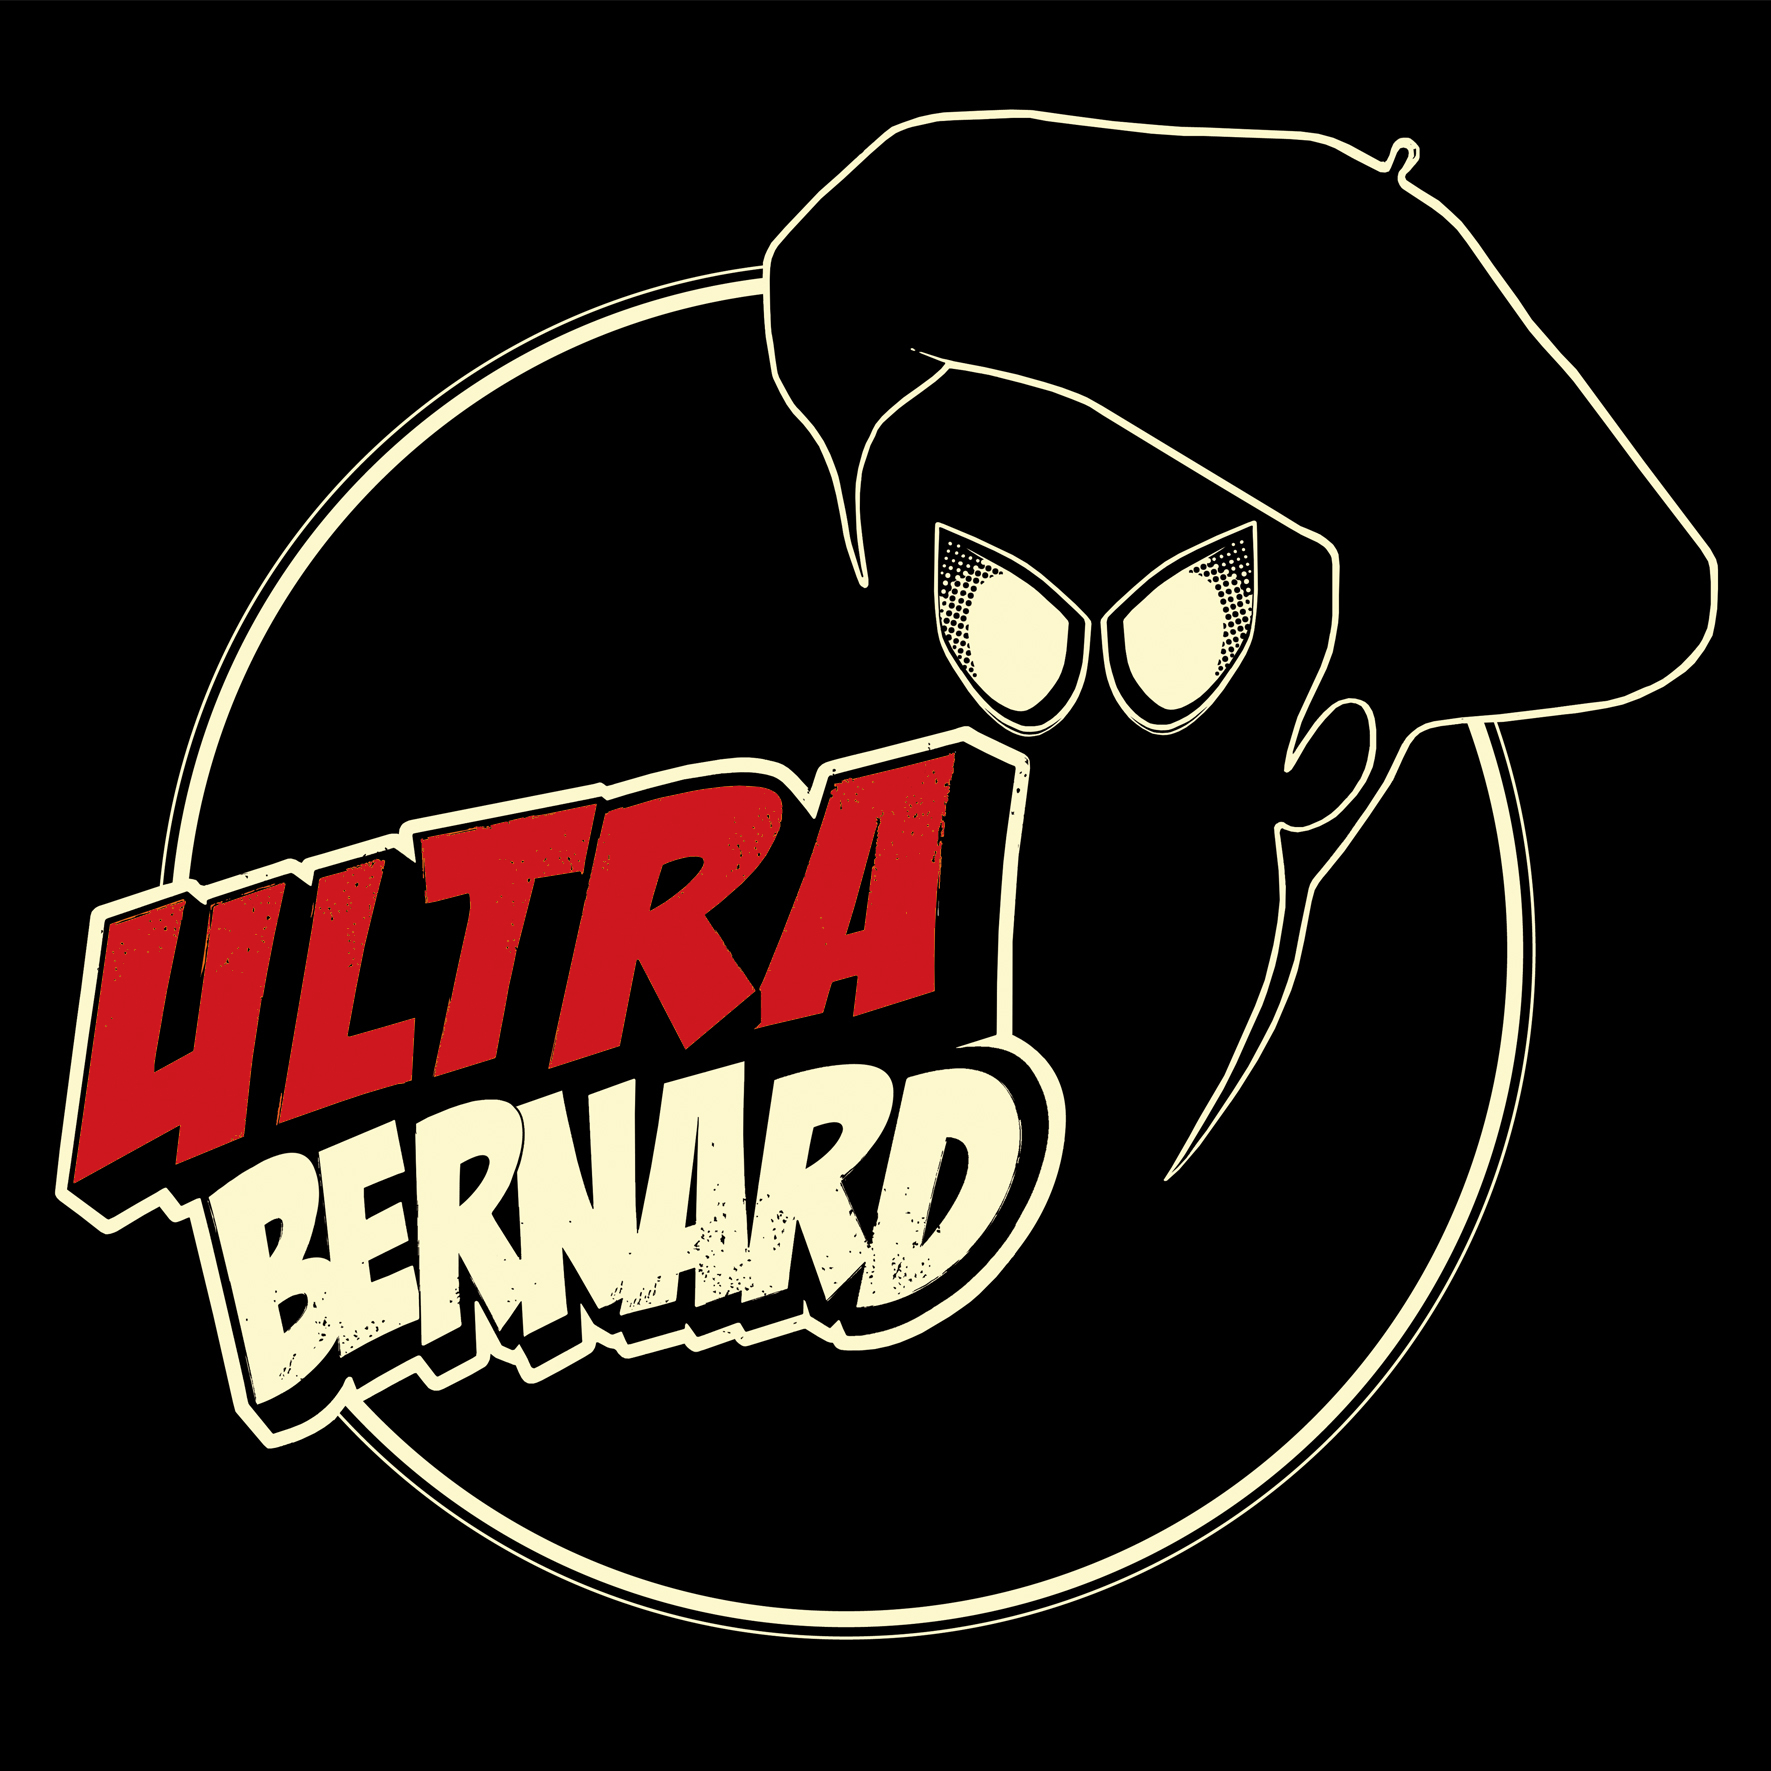 UltraBernard